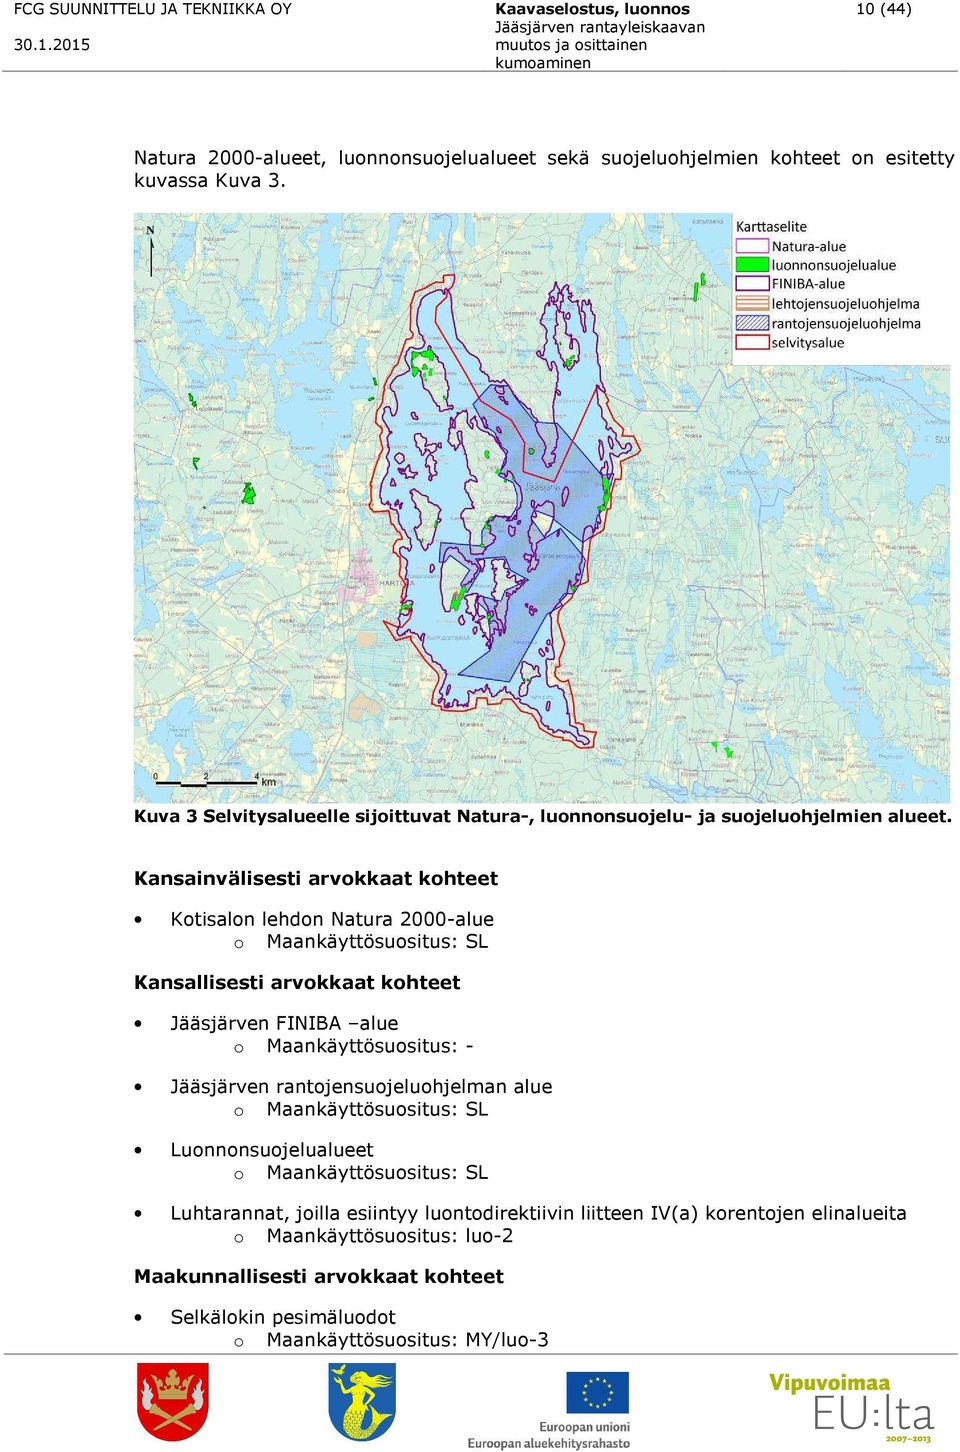 Kansainvälisesti arvokkaat kohteet Kotisalon lehdon Natura 2000-alue o Maankäyttösuositus: SL Kansallisesti arvokkaat kohteet Jääsjärven FINIBA alue o Maankäyttösuositus: - Jääsjärven